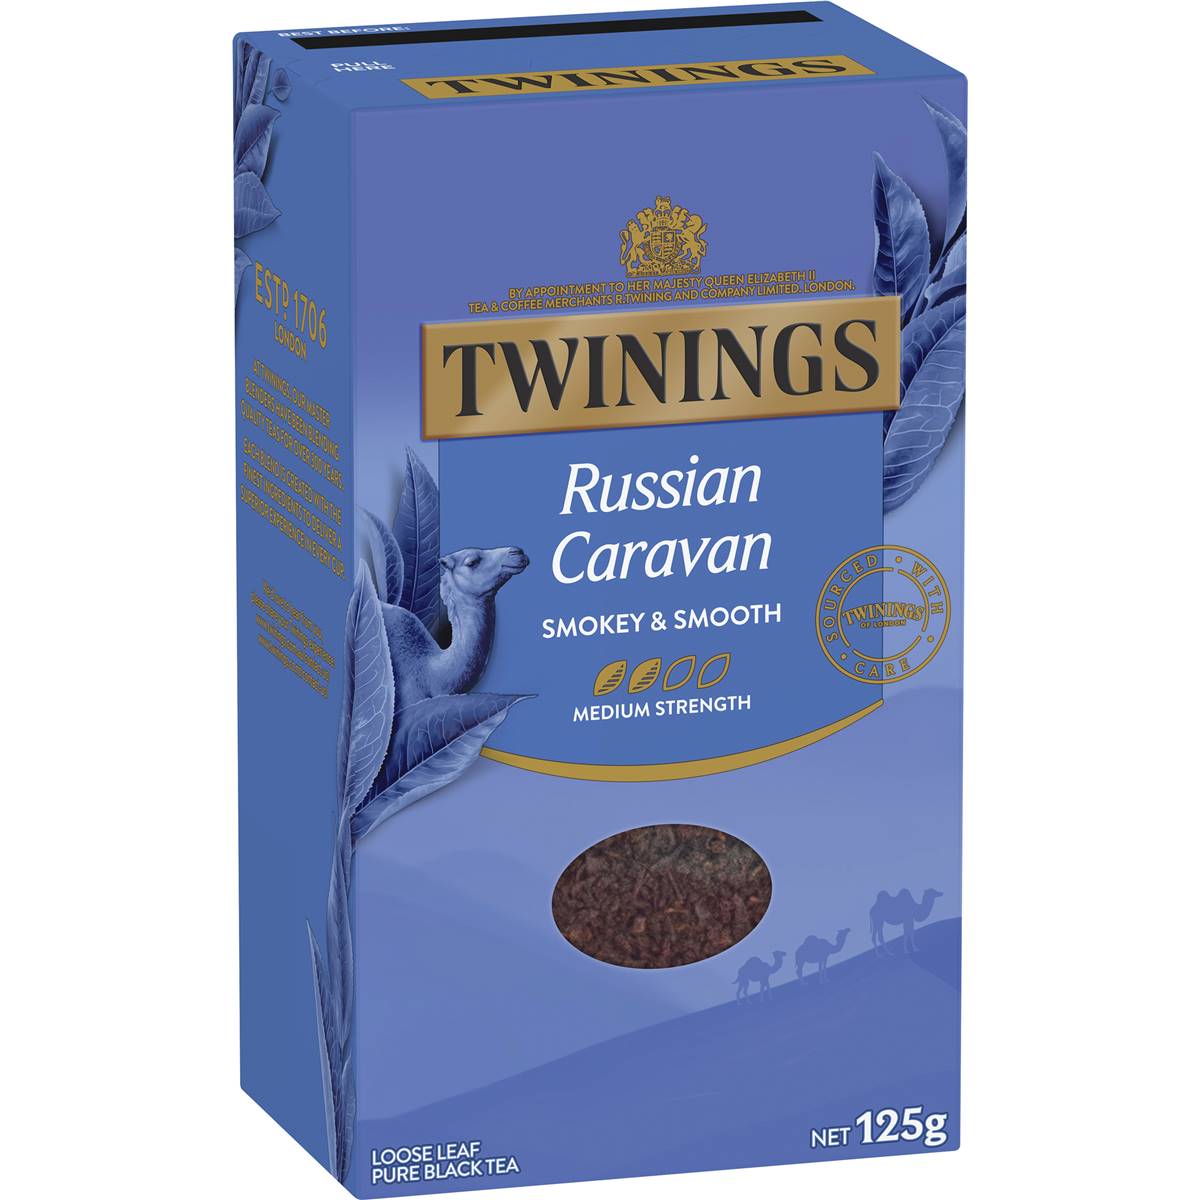 Calories in Twinings Russian Caravan Loose Leaf Tea